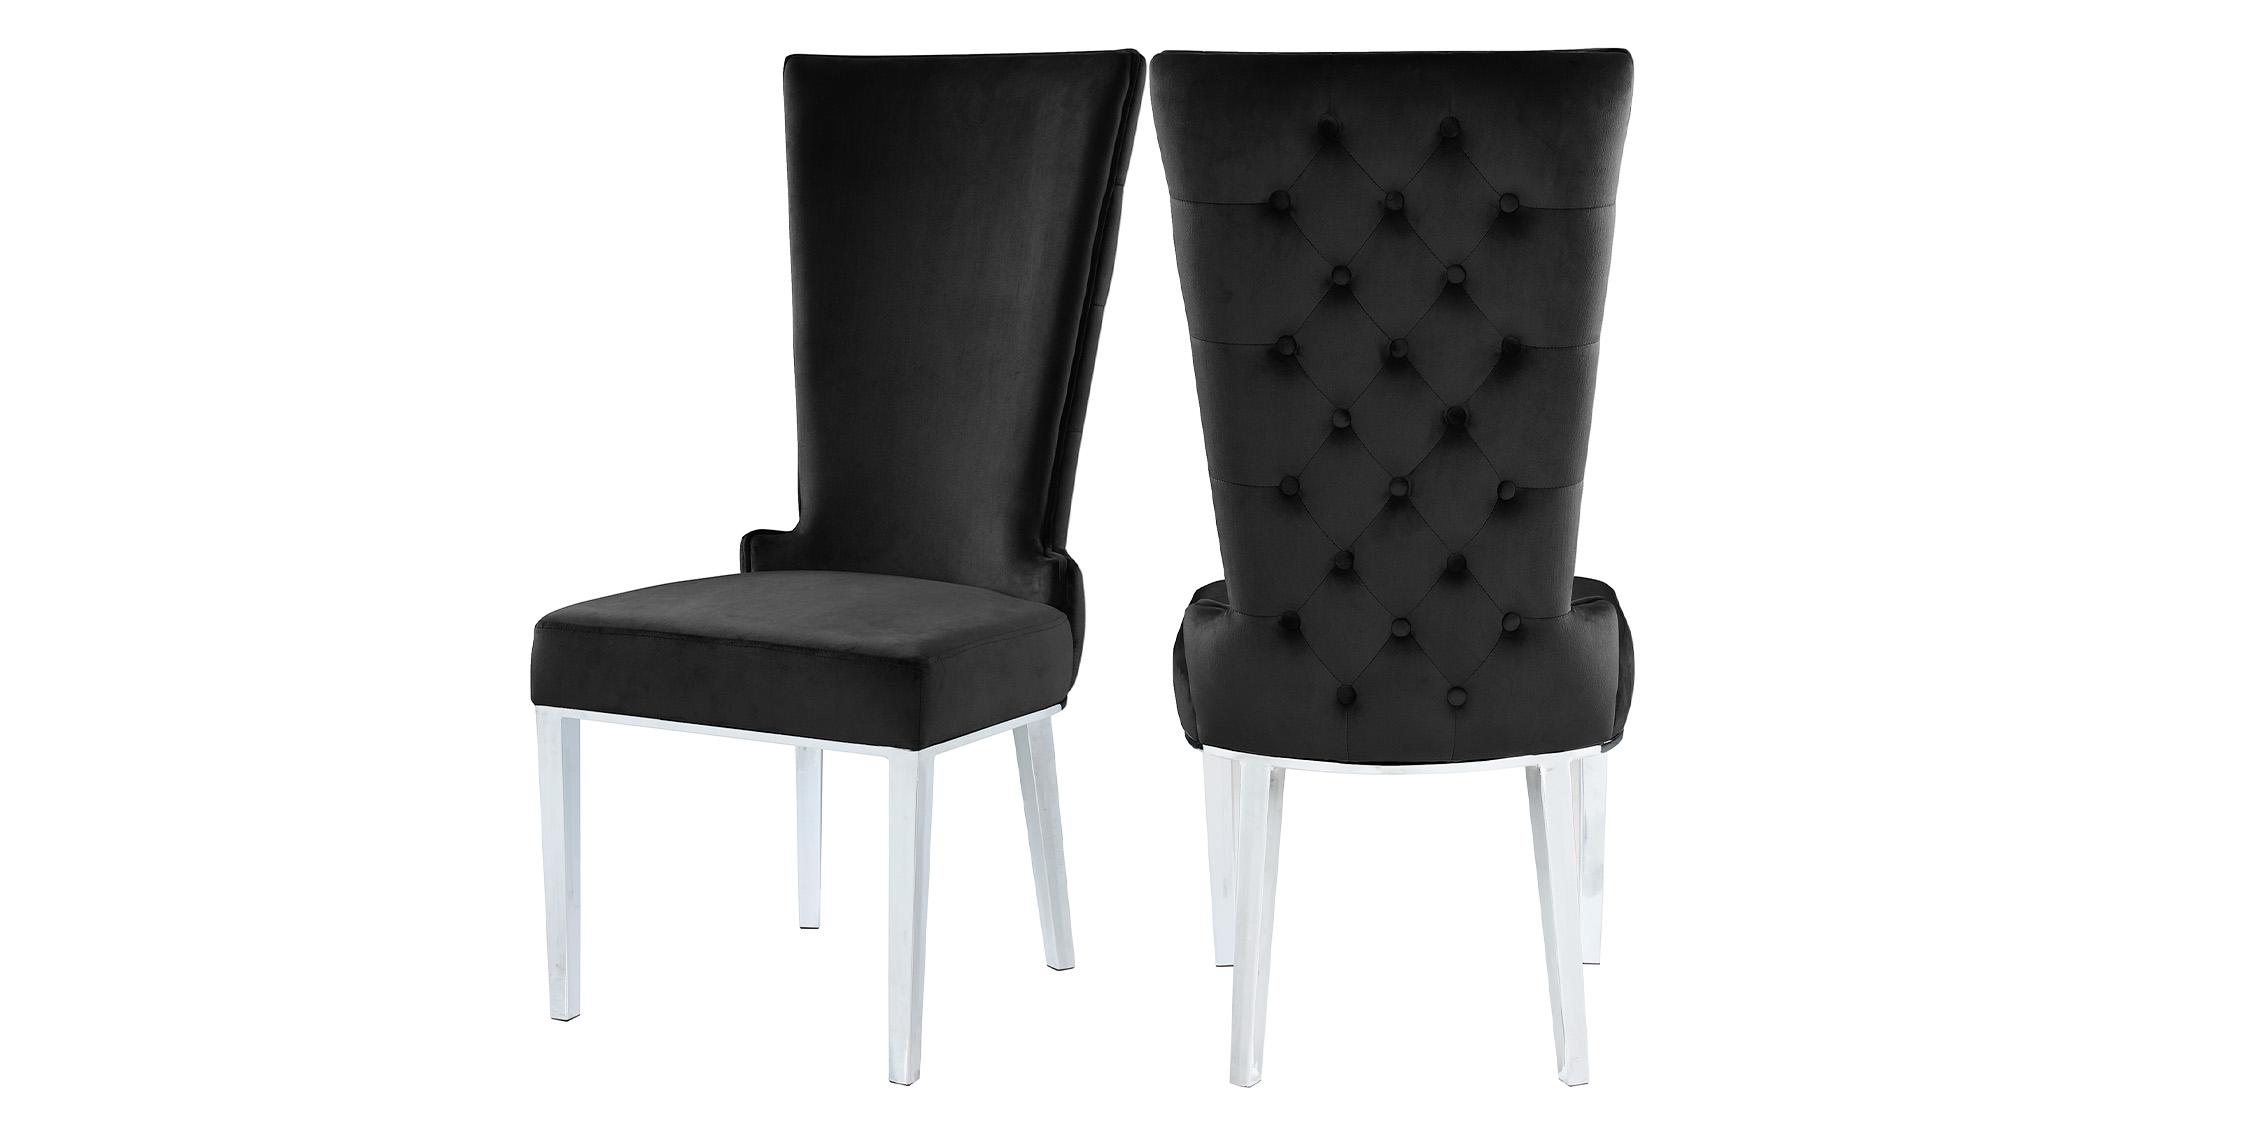 Contemporary, Modern Chair Set SERAFINA 729Black-C 729Black-C-Set-2 in Chrome, Black Velvet